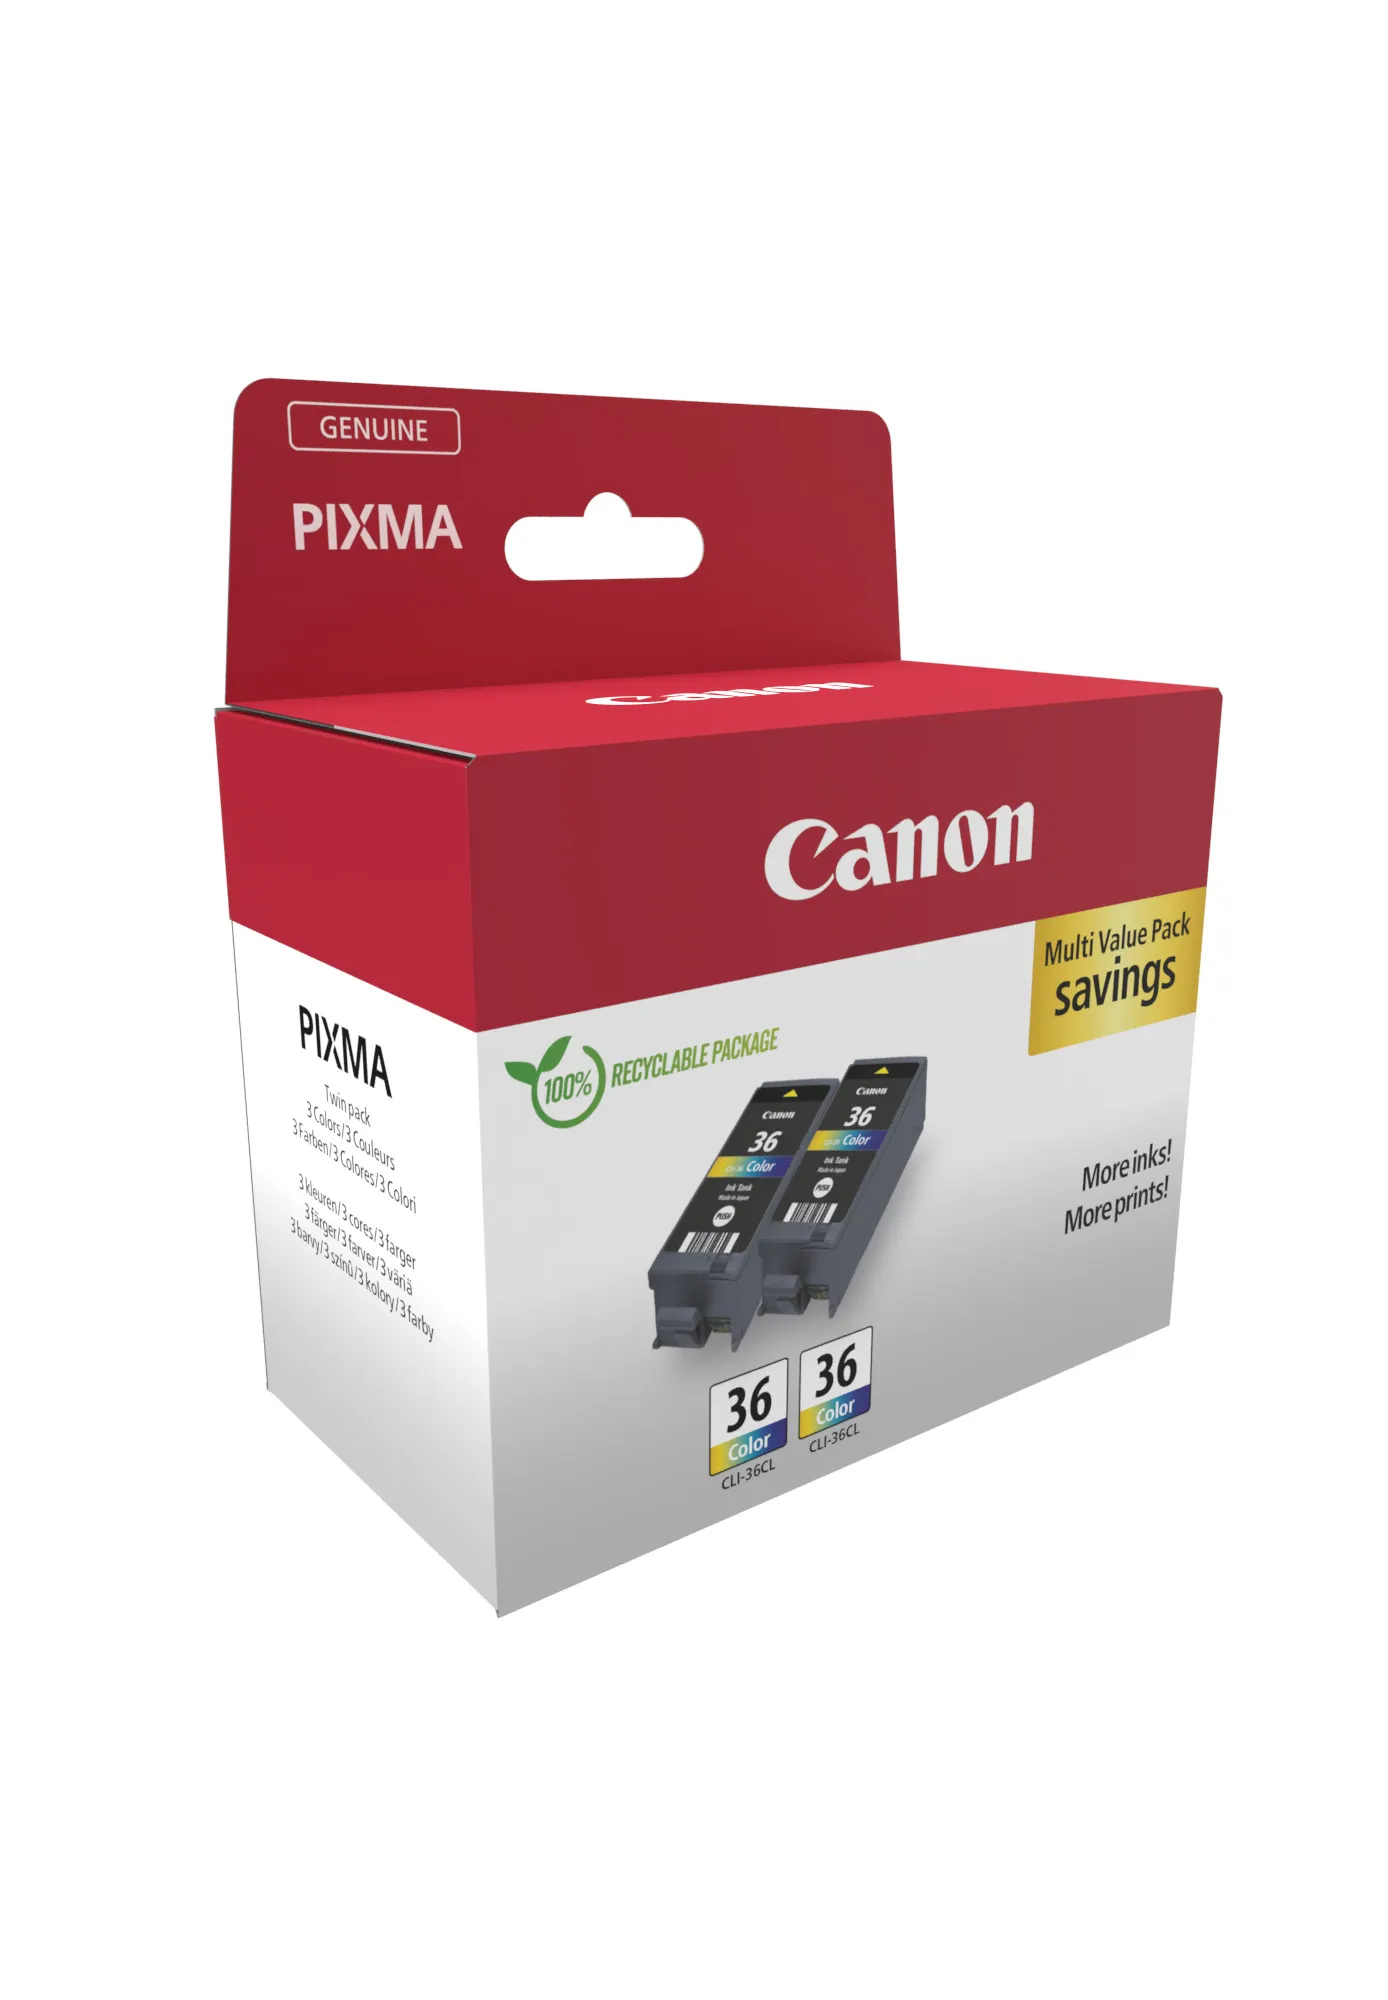 Vente CANON CLI-36 Ink Cartridge Twin Pack Canon au meilleur prix - visuel 2